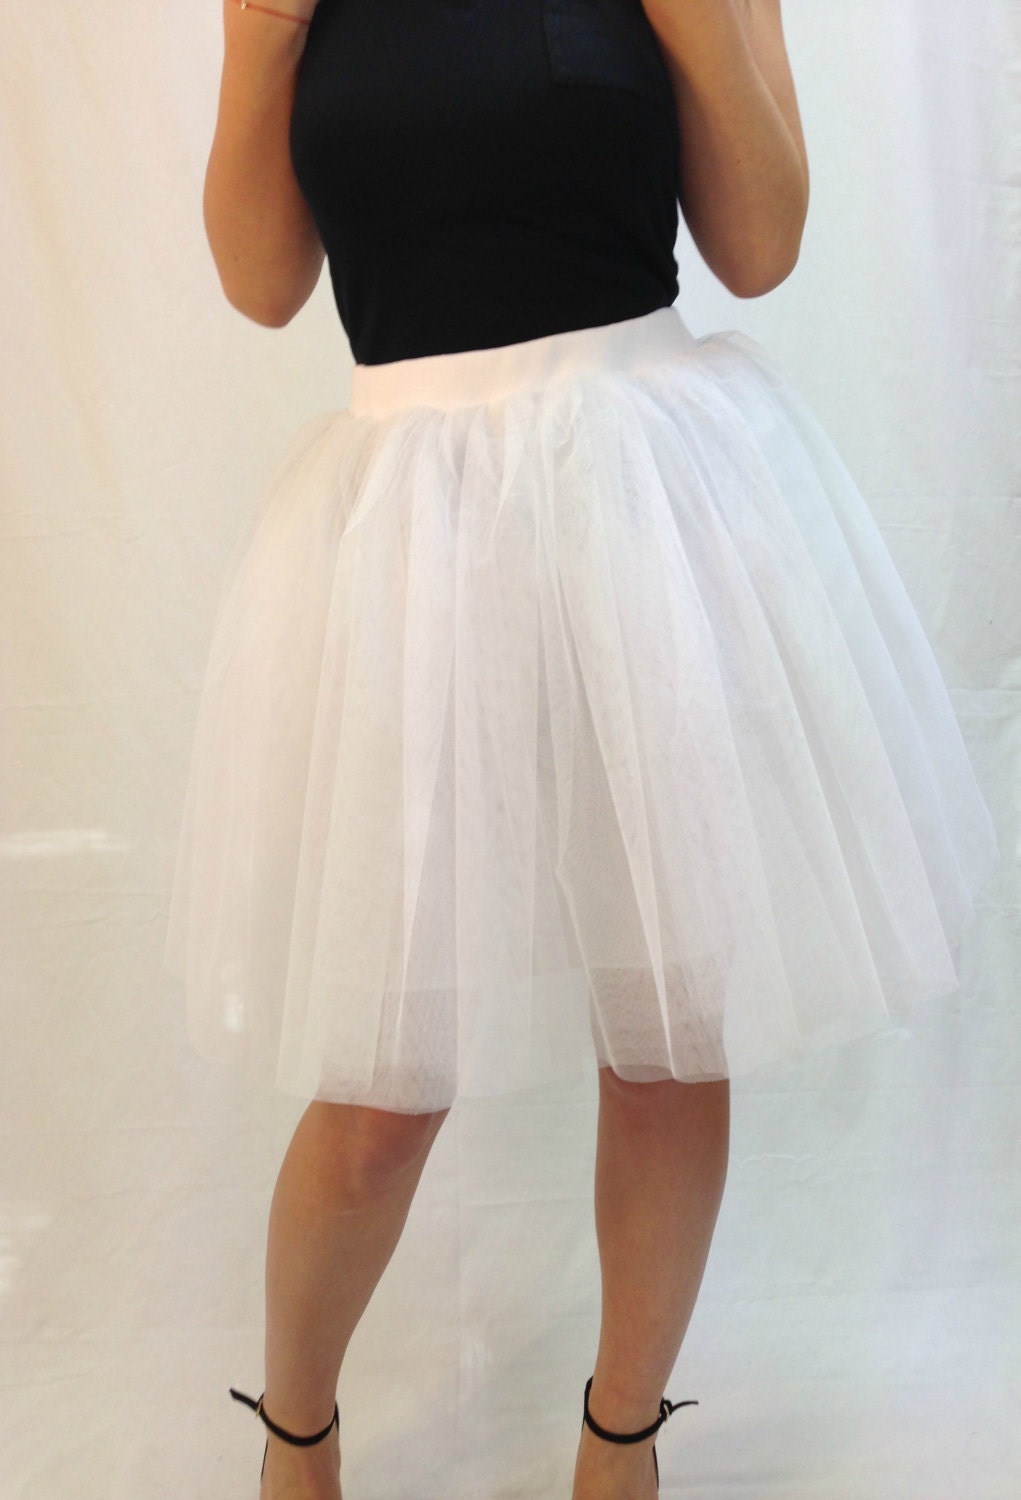 White Women Tulle Skirt Knee Length Tutu Skirt By Mdsewingatelier 4720